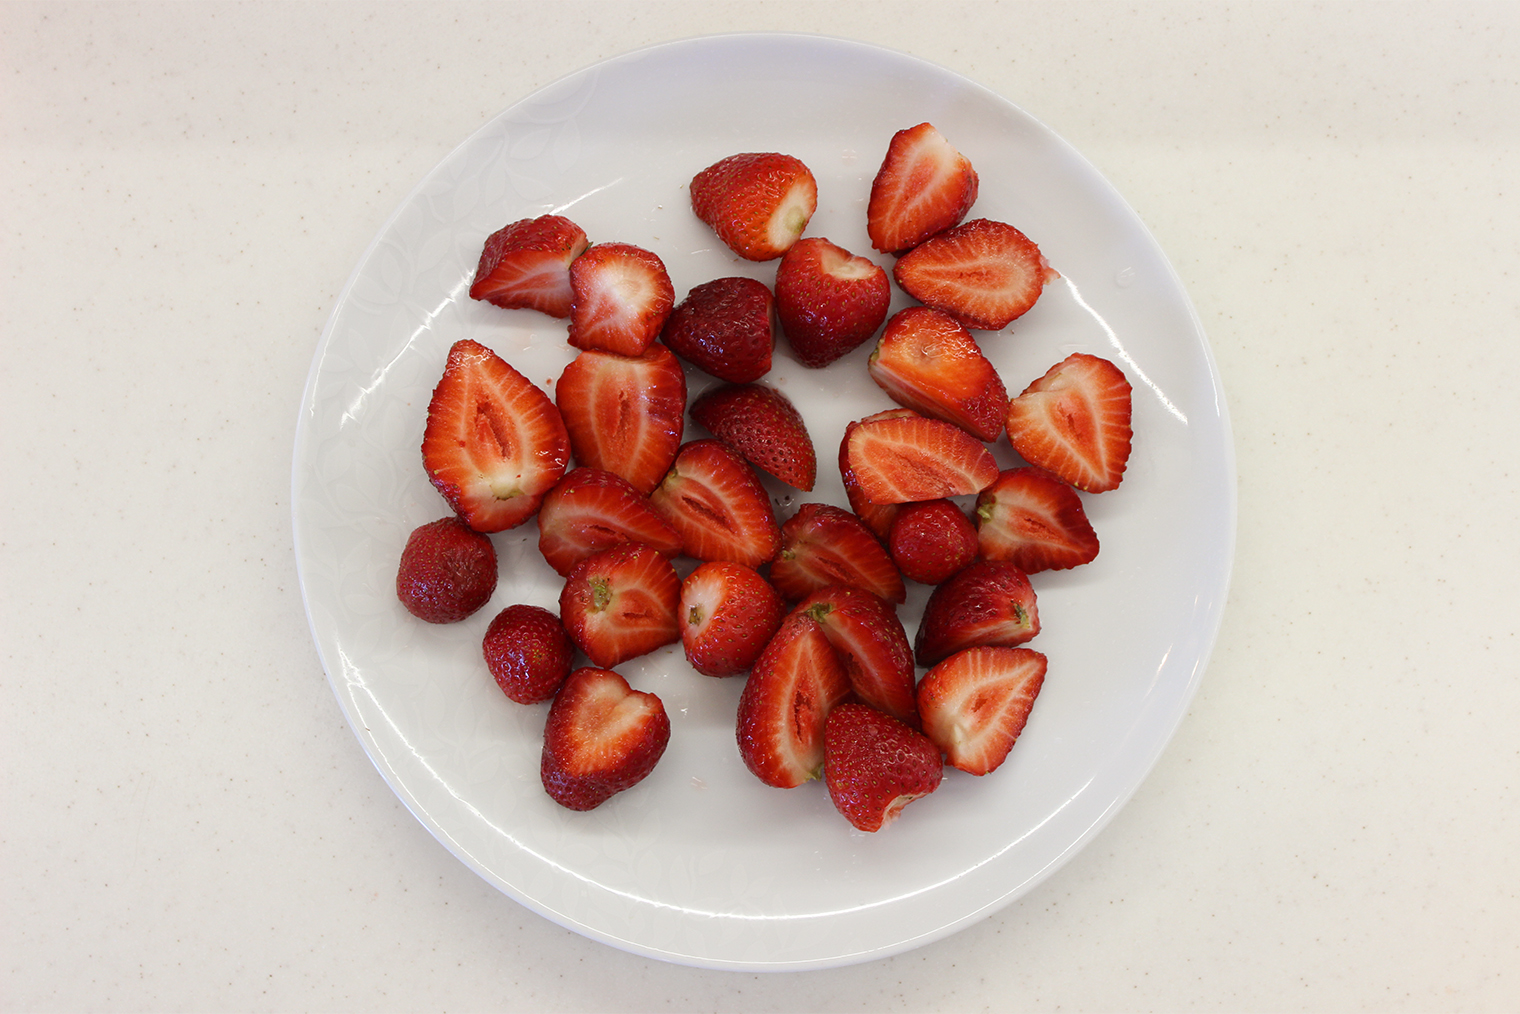 Некоторые ягоды попались крупные — их лучше разрезать: так они точно поместятся в сотейник